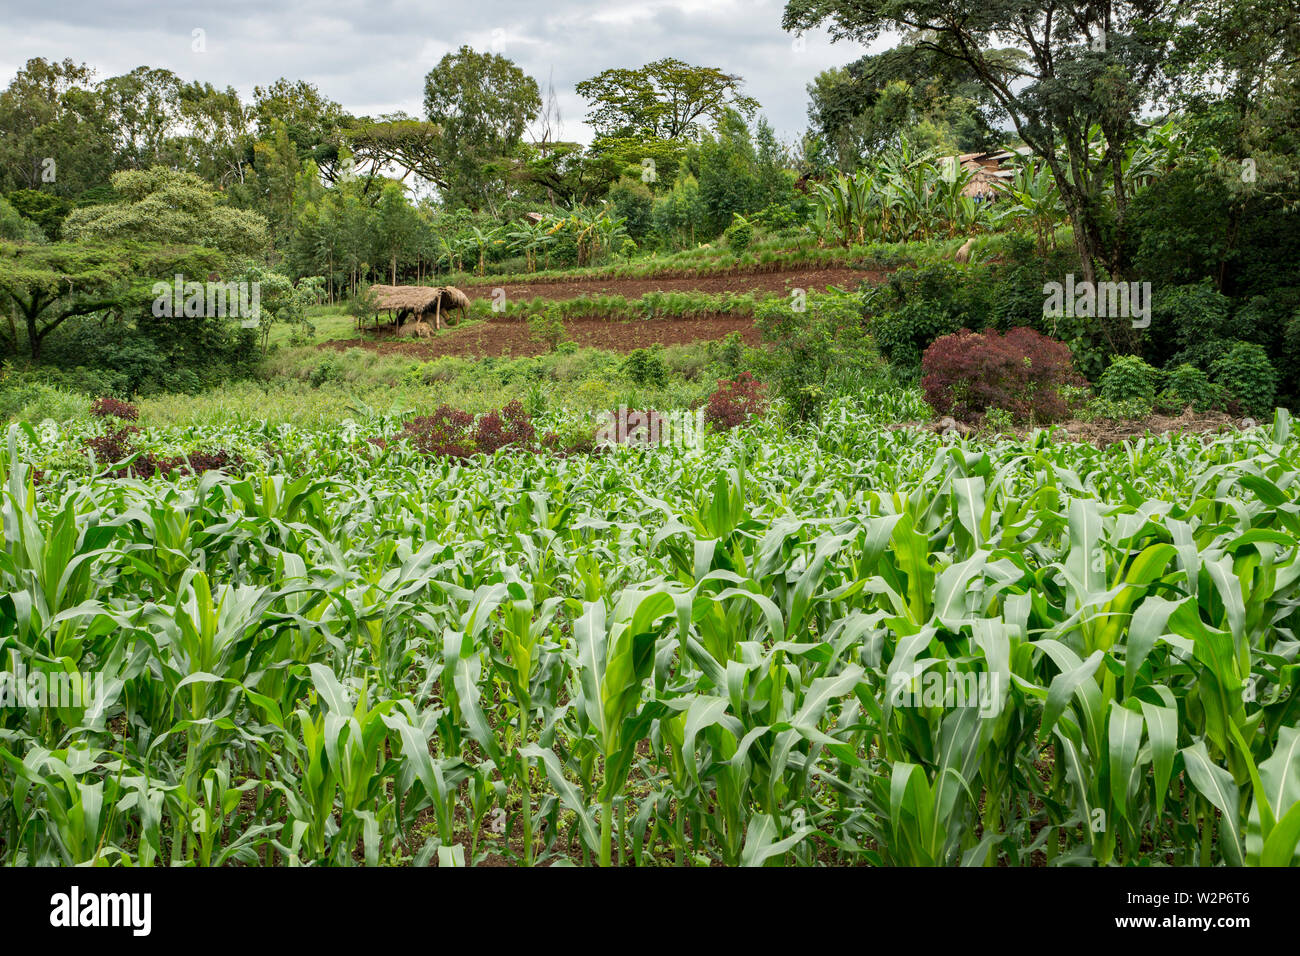 La coltivazione delle paludi con il mais (Zea mays) in Illubabor, Etiopia Foto Stock